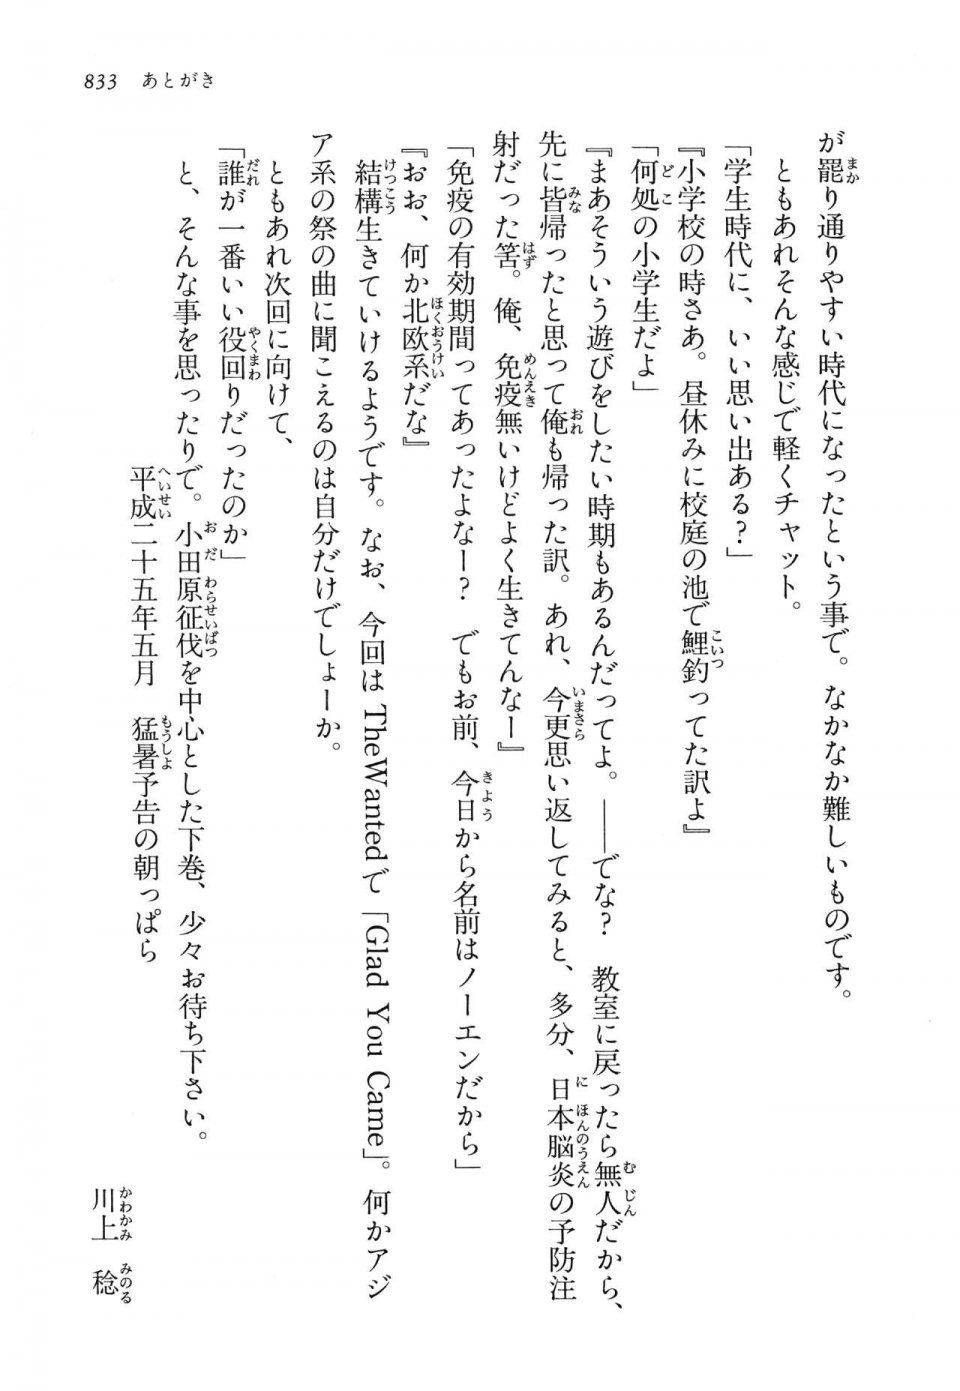 Kyoukai Senjou no Horizon LN Vol 14(6B) - Photo #833